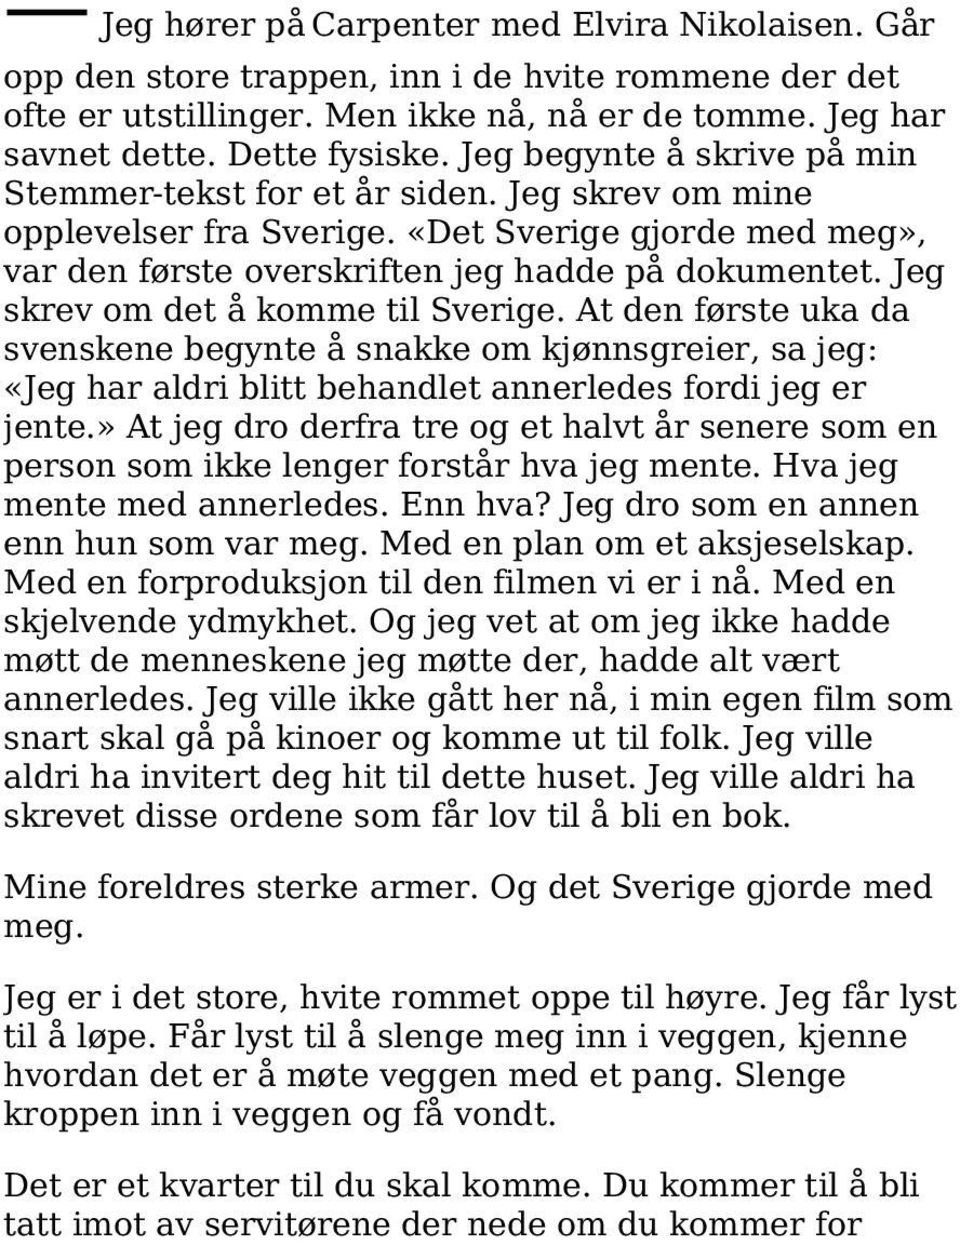 Jeg skrev om det å komme til Sverige. At den første uka da svenskene begynte å snakke om kjønnsgreier, sa jeg: «Jeg har aldri blitt behandlet annerledes fordi jeg er jente.